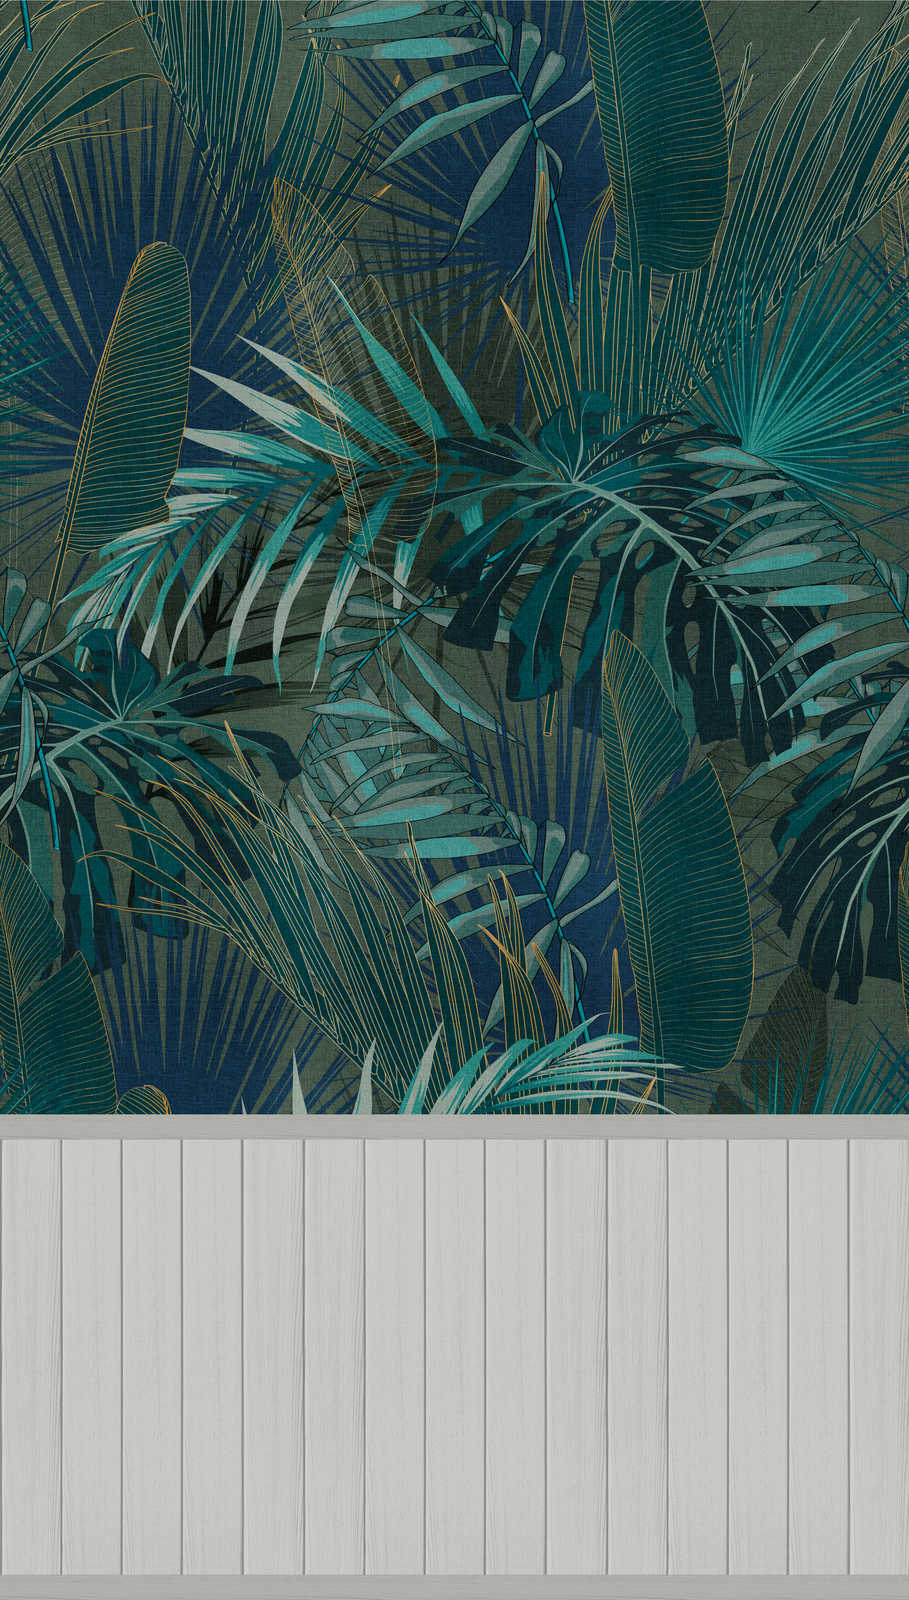             Onderlaag behang met vliesmotief, plintrand met houteffect en junglepatroon - grijs, blauw, turquoise
        